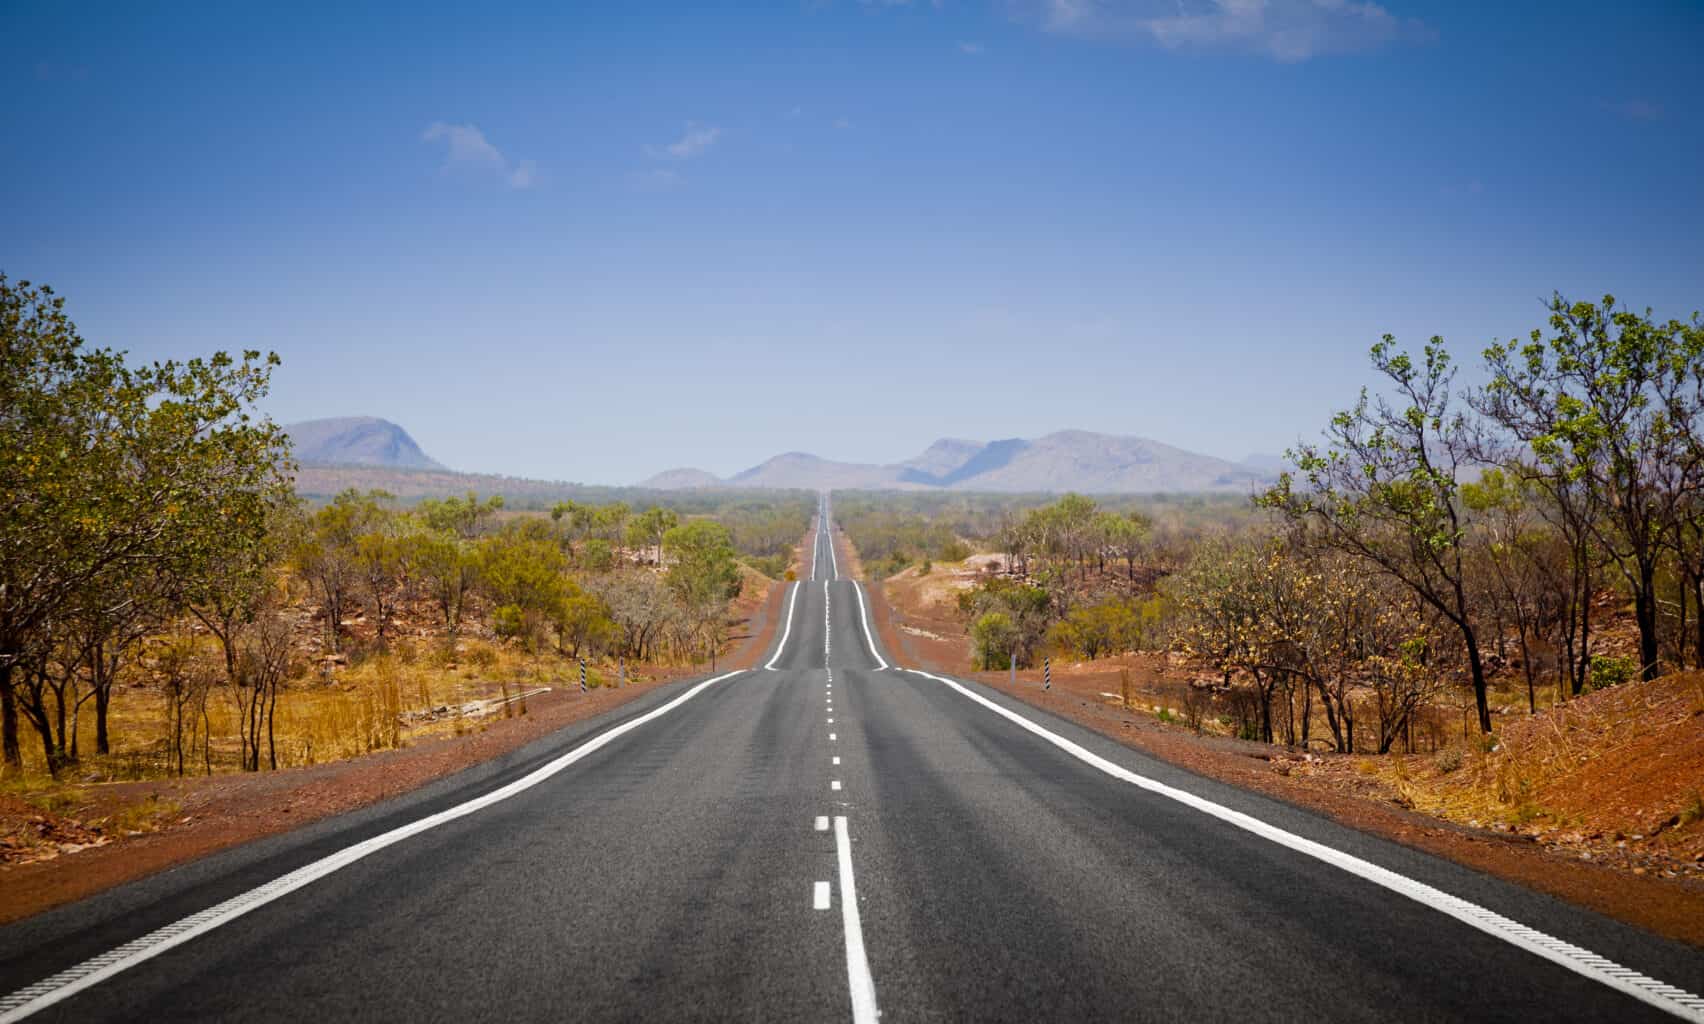 Long open road in Kimberly, Western Australia.